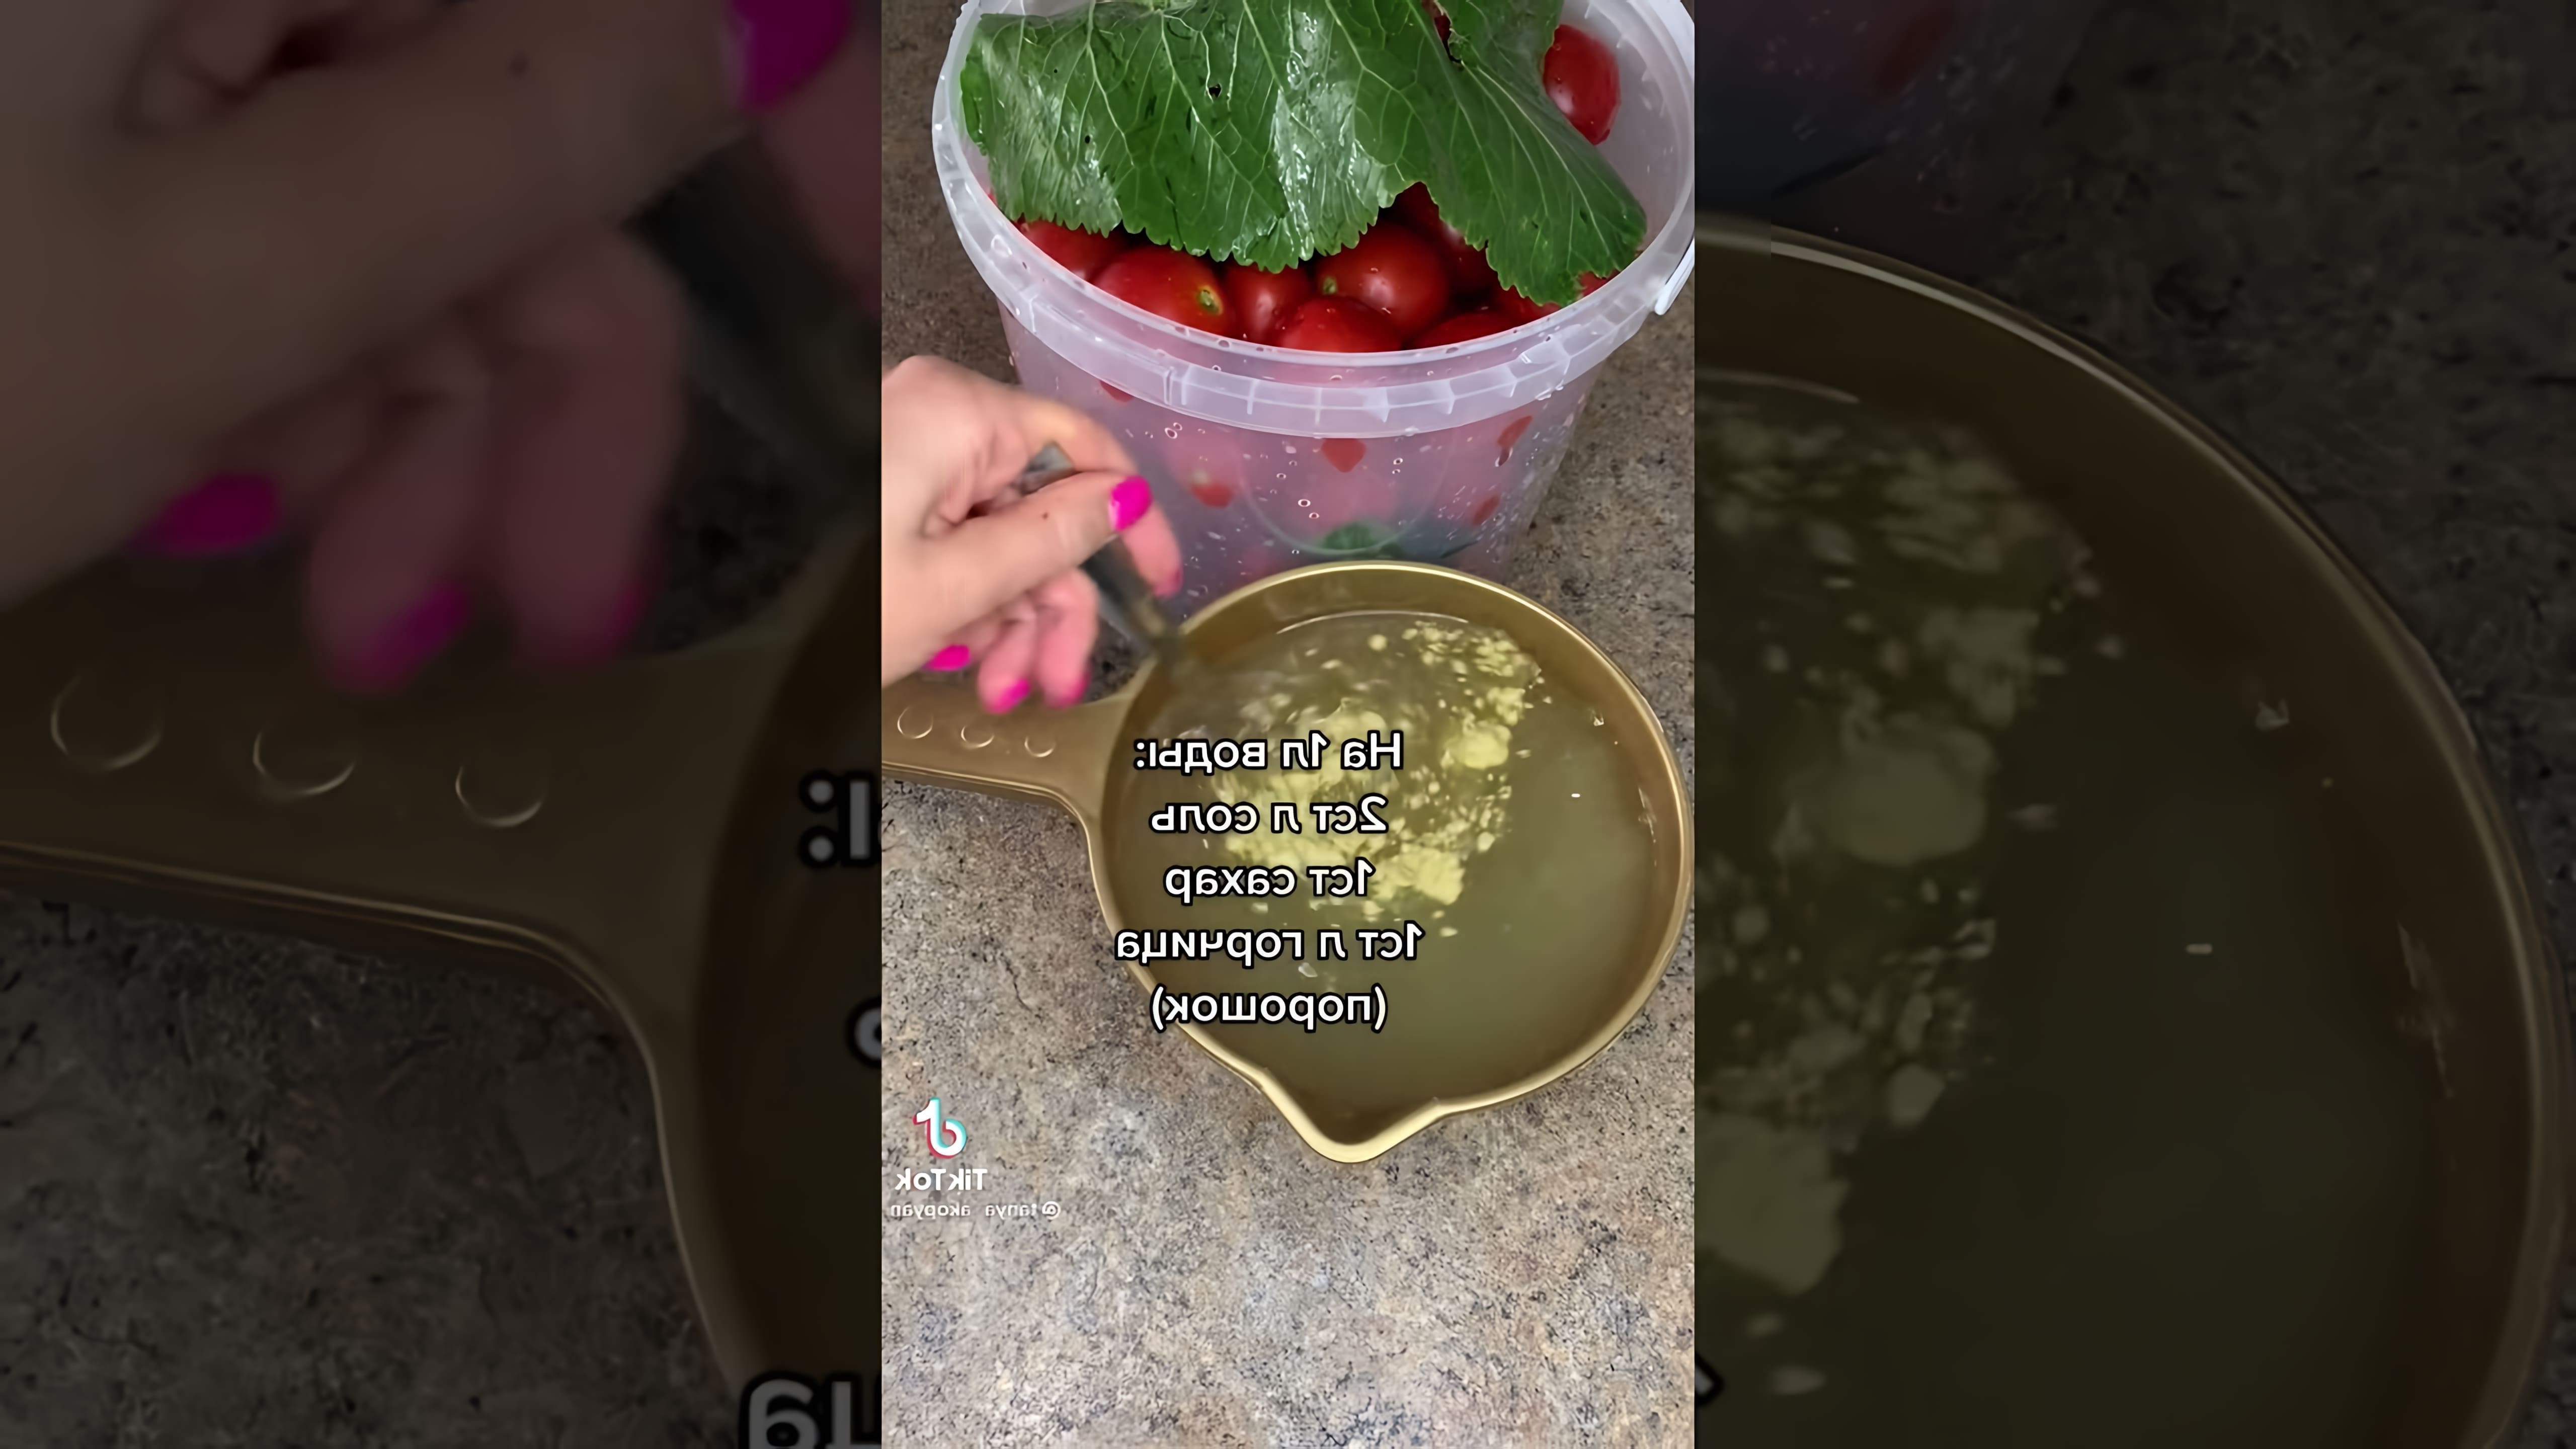 Видео демонстрирует рецепт квашеных помидоров